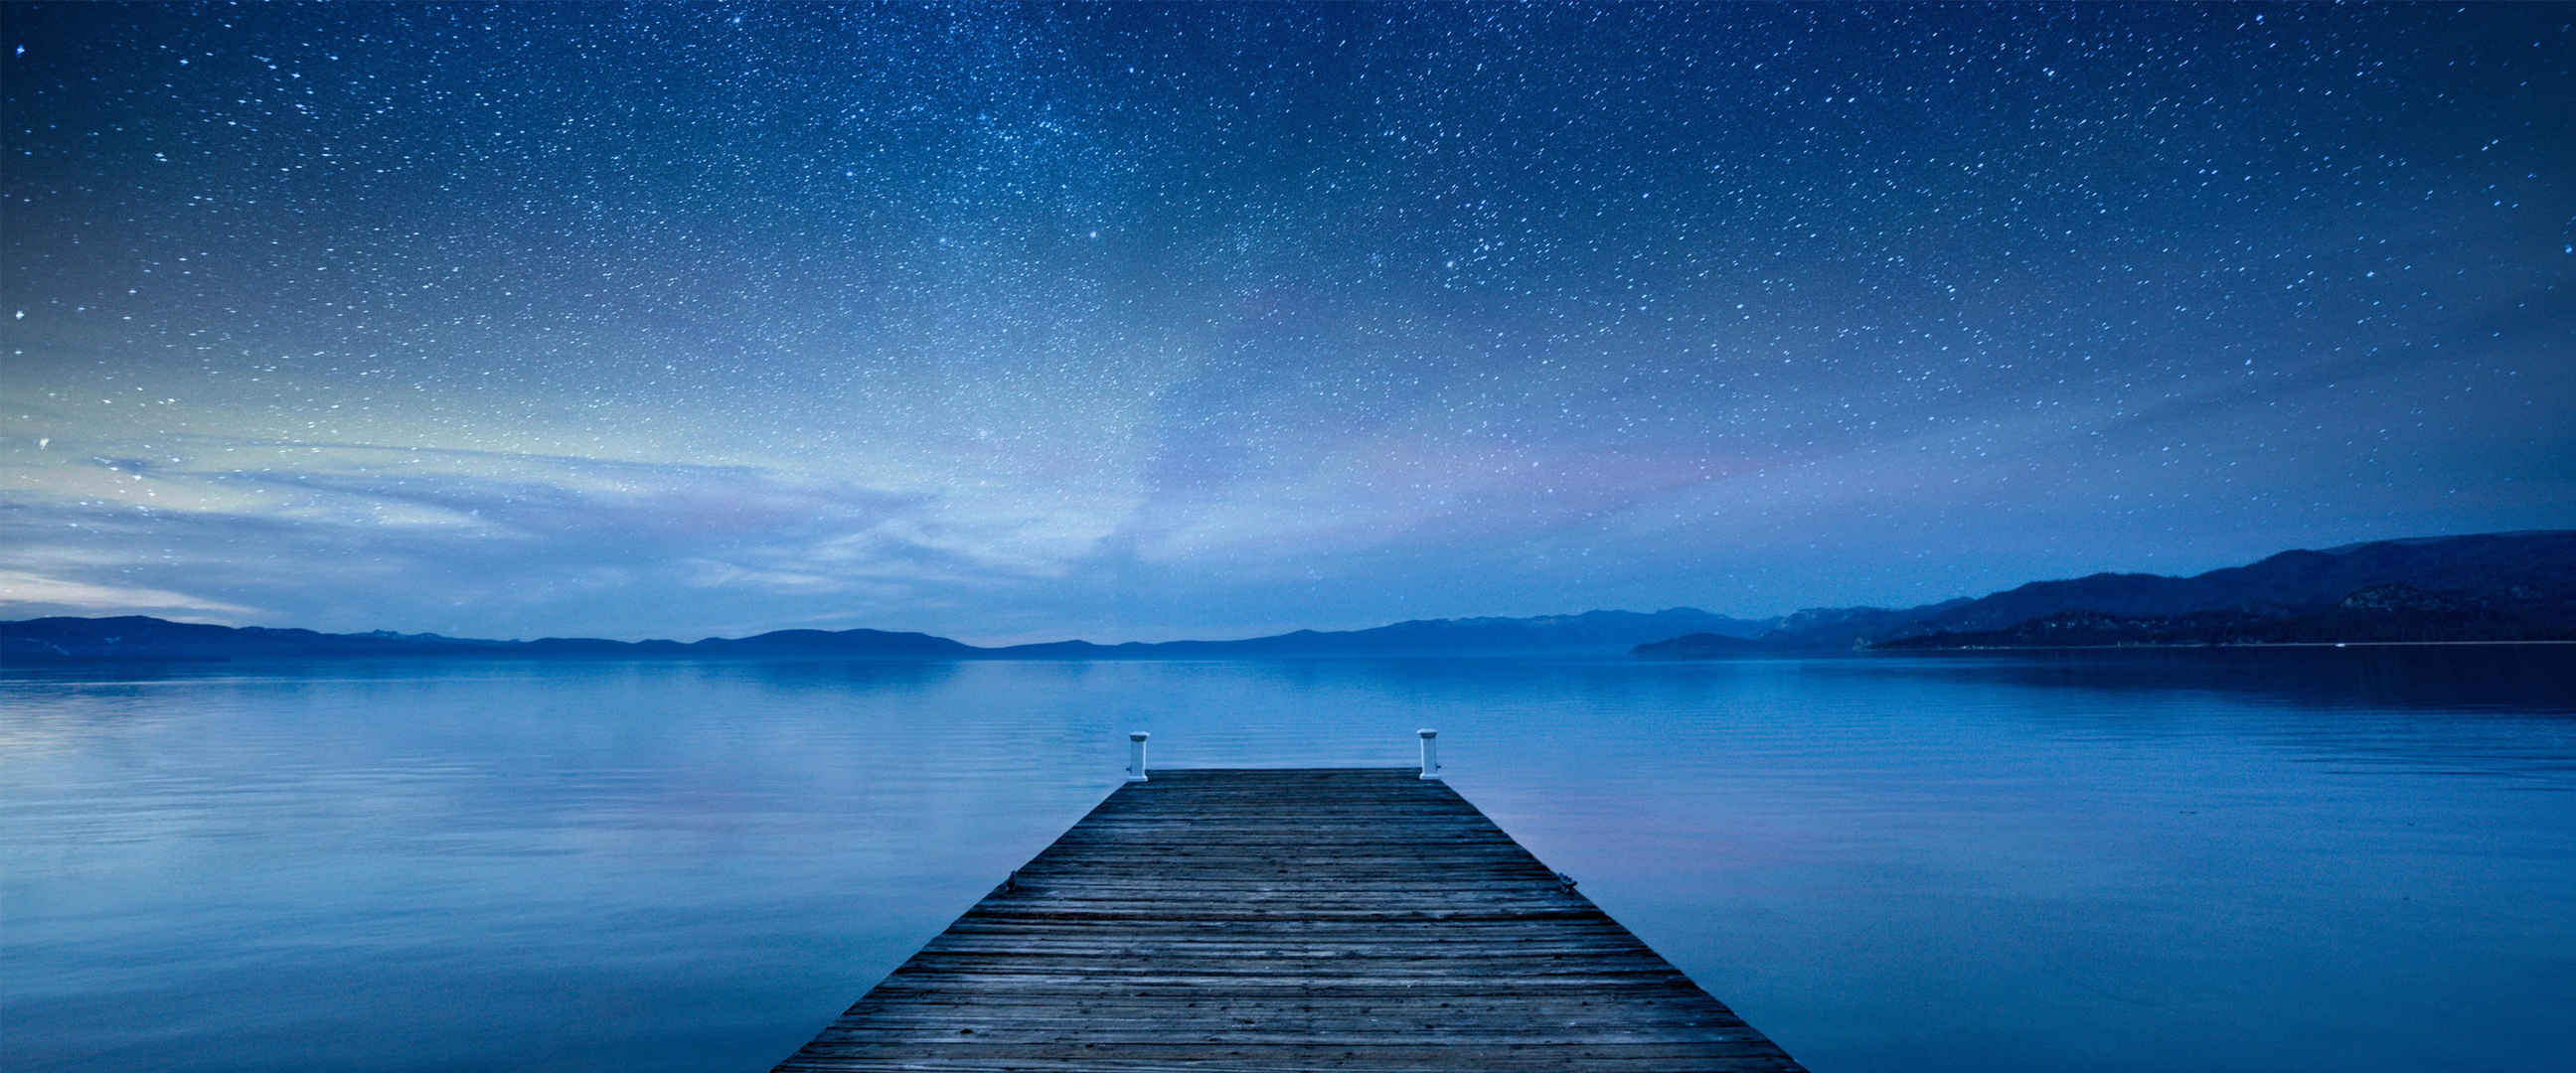 夜空繁星 大海 木桥 图片